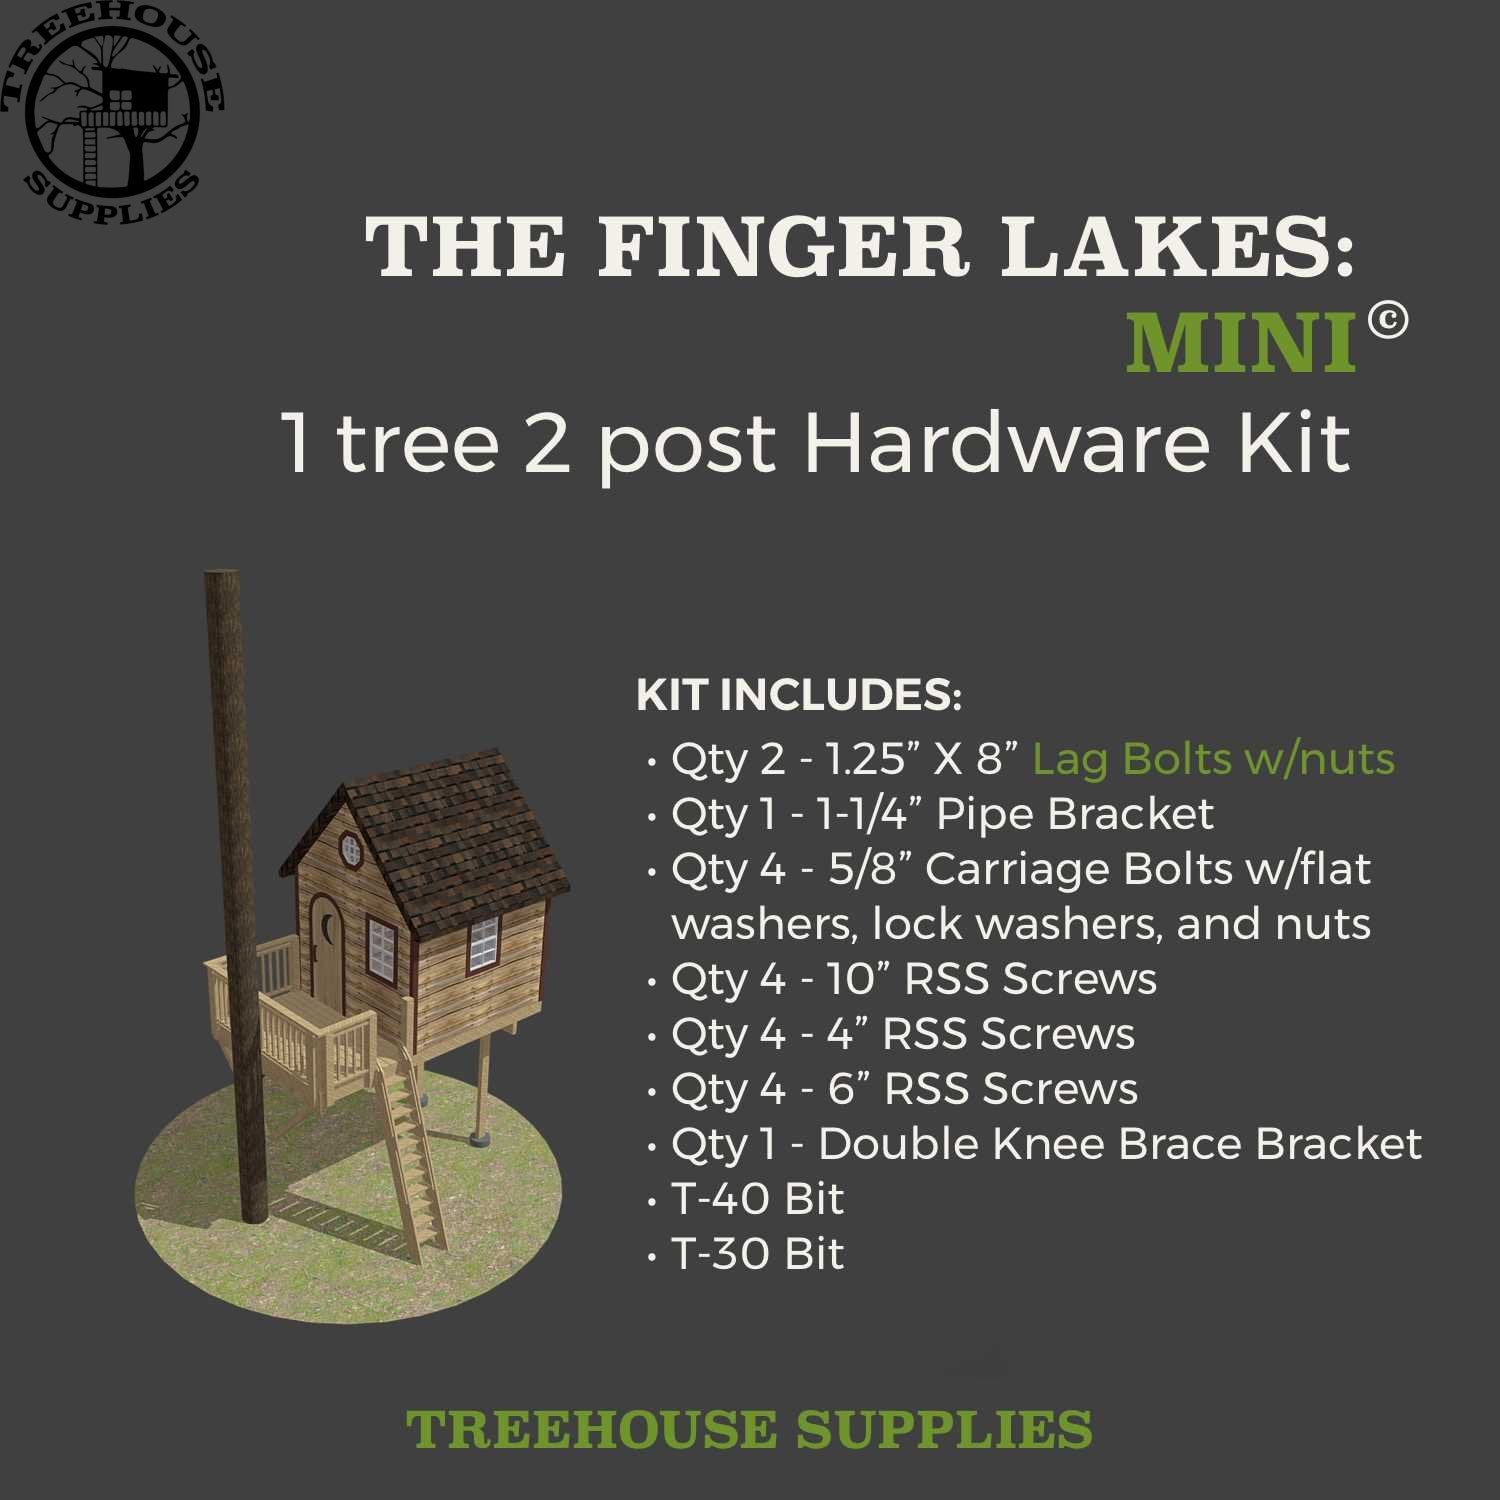 Treehouse Supplies THE FINGER LAKES: MINI © 1 tree 2 post hardware kit 